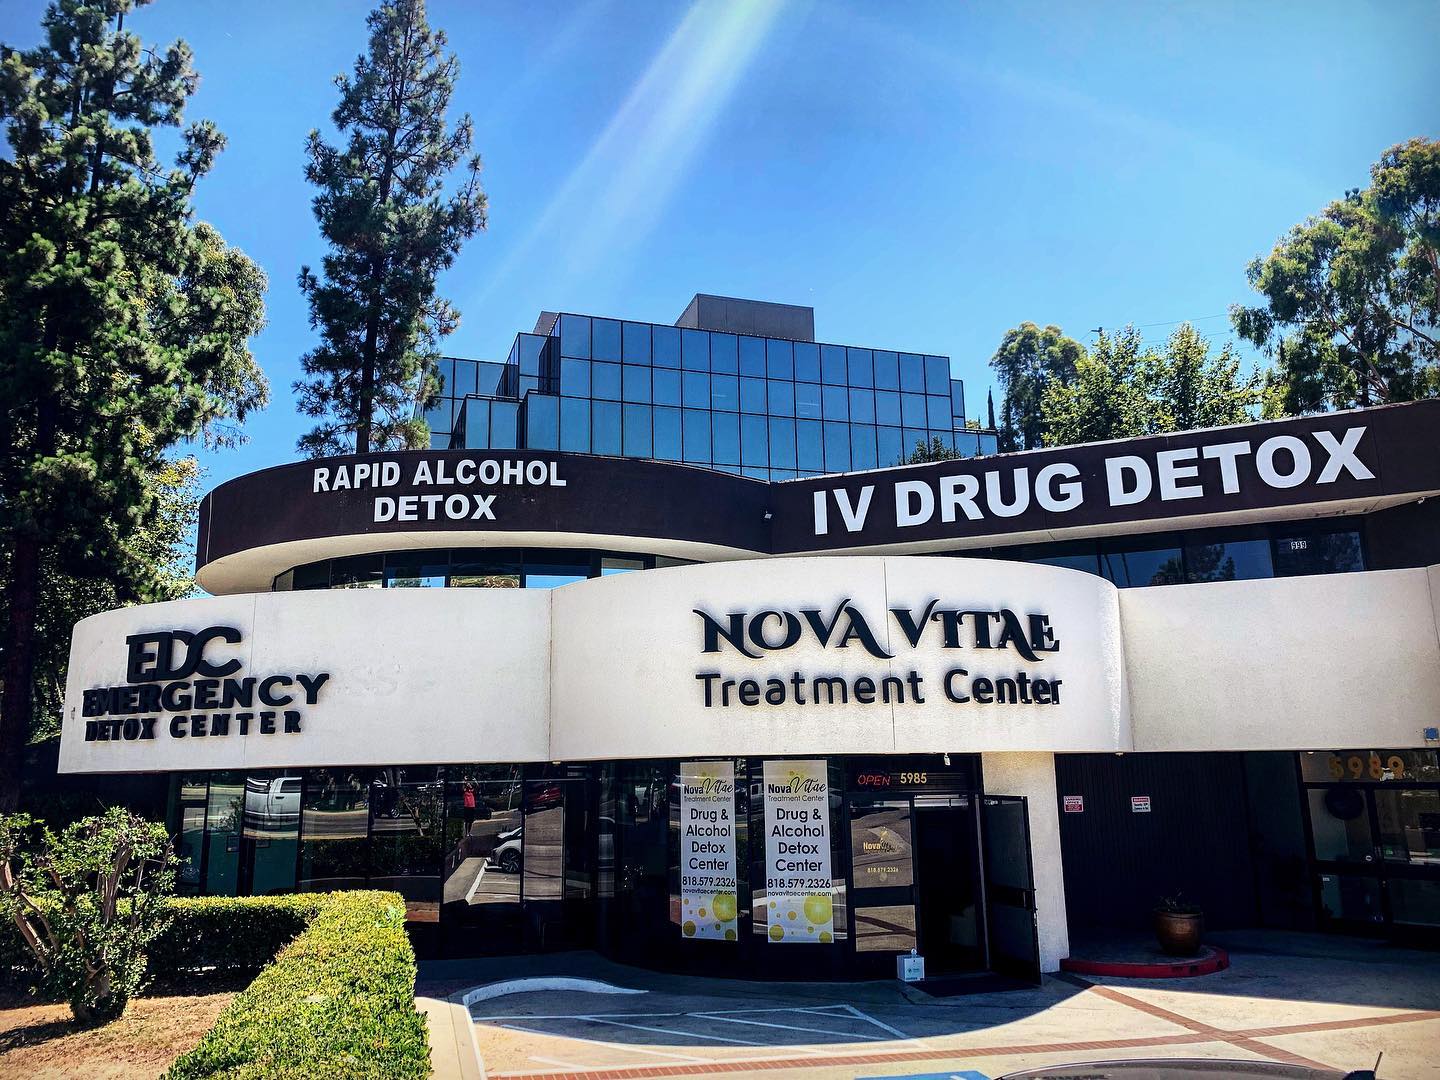 Nova Vitae Treatment Center